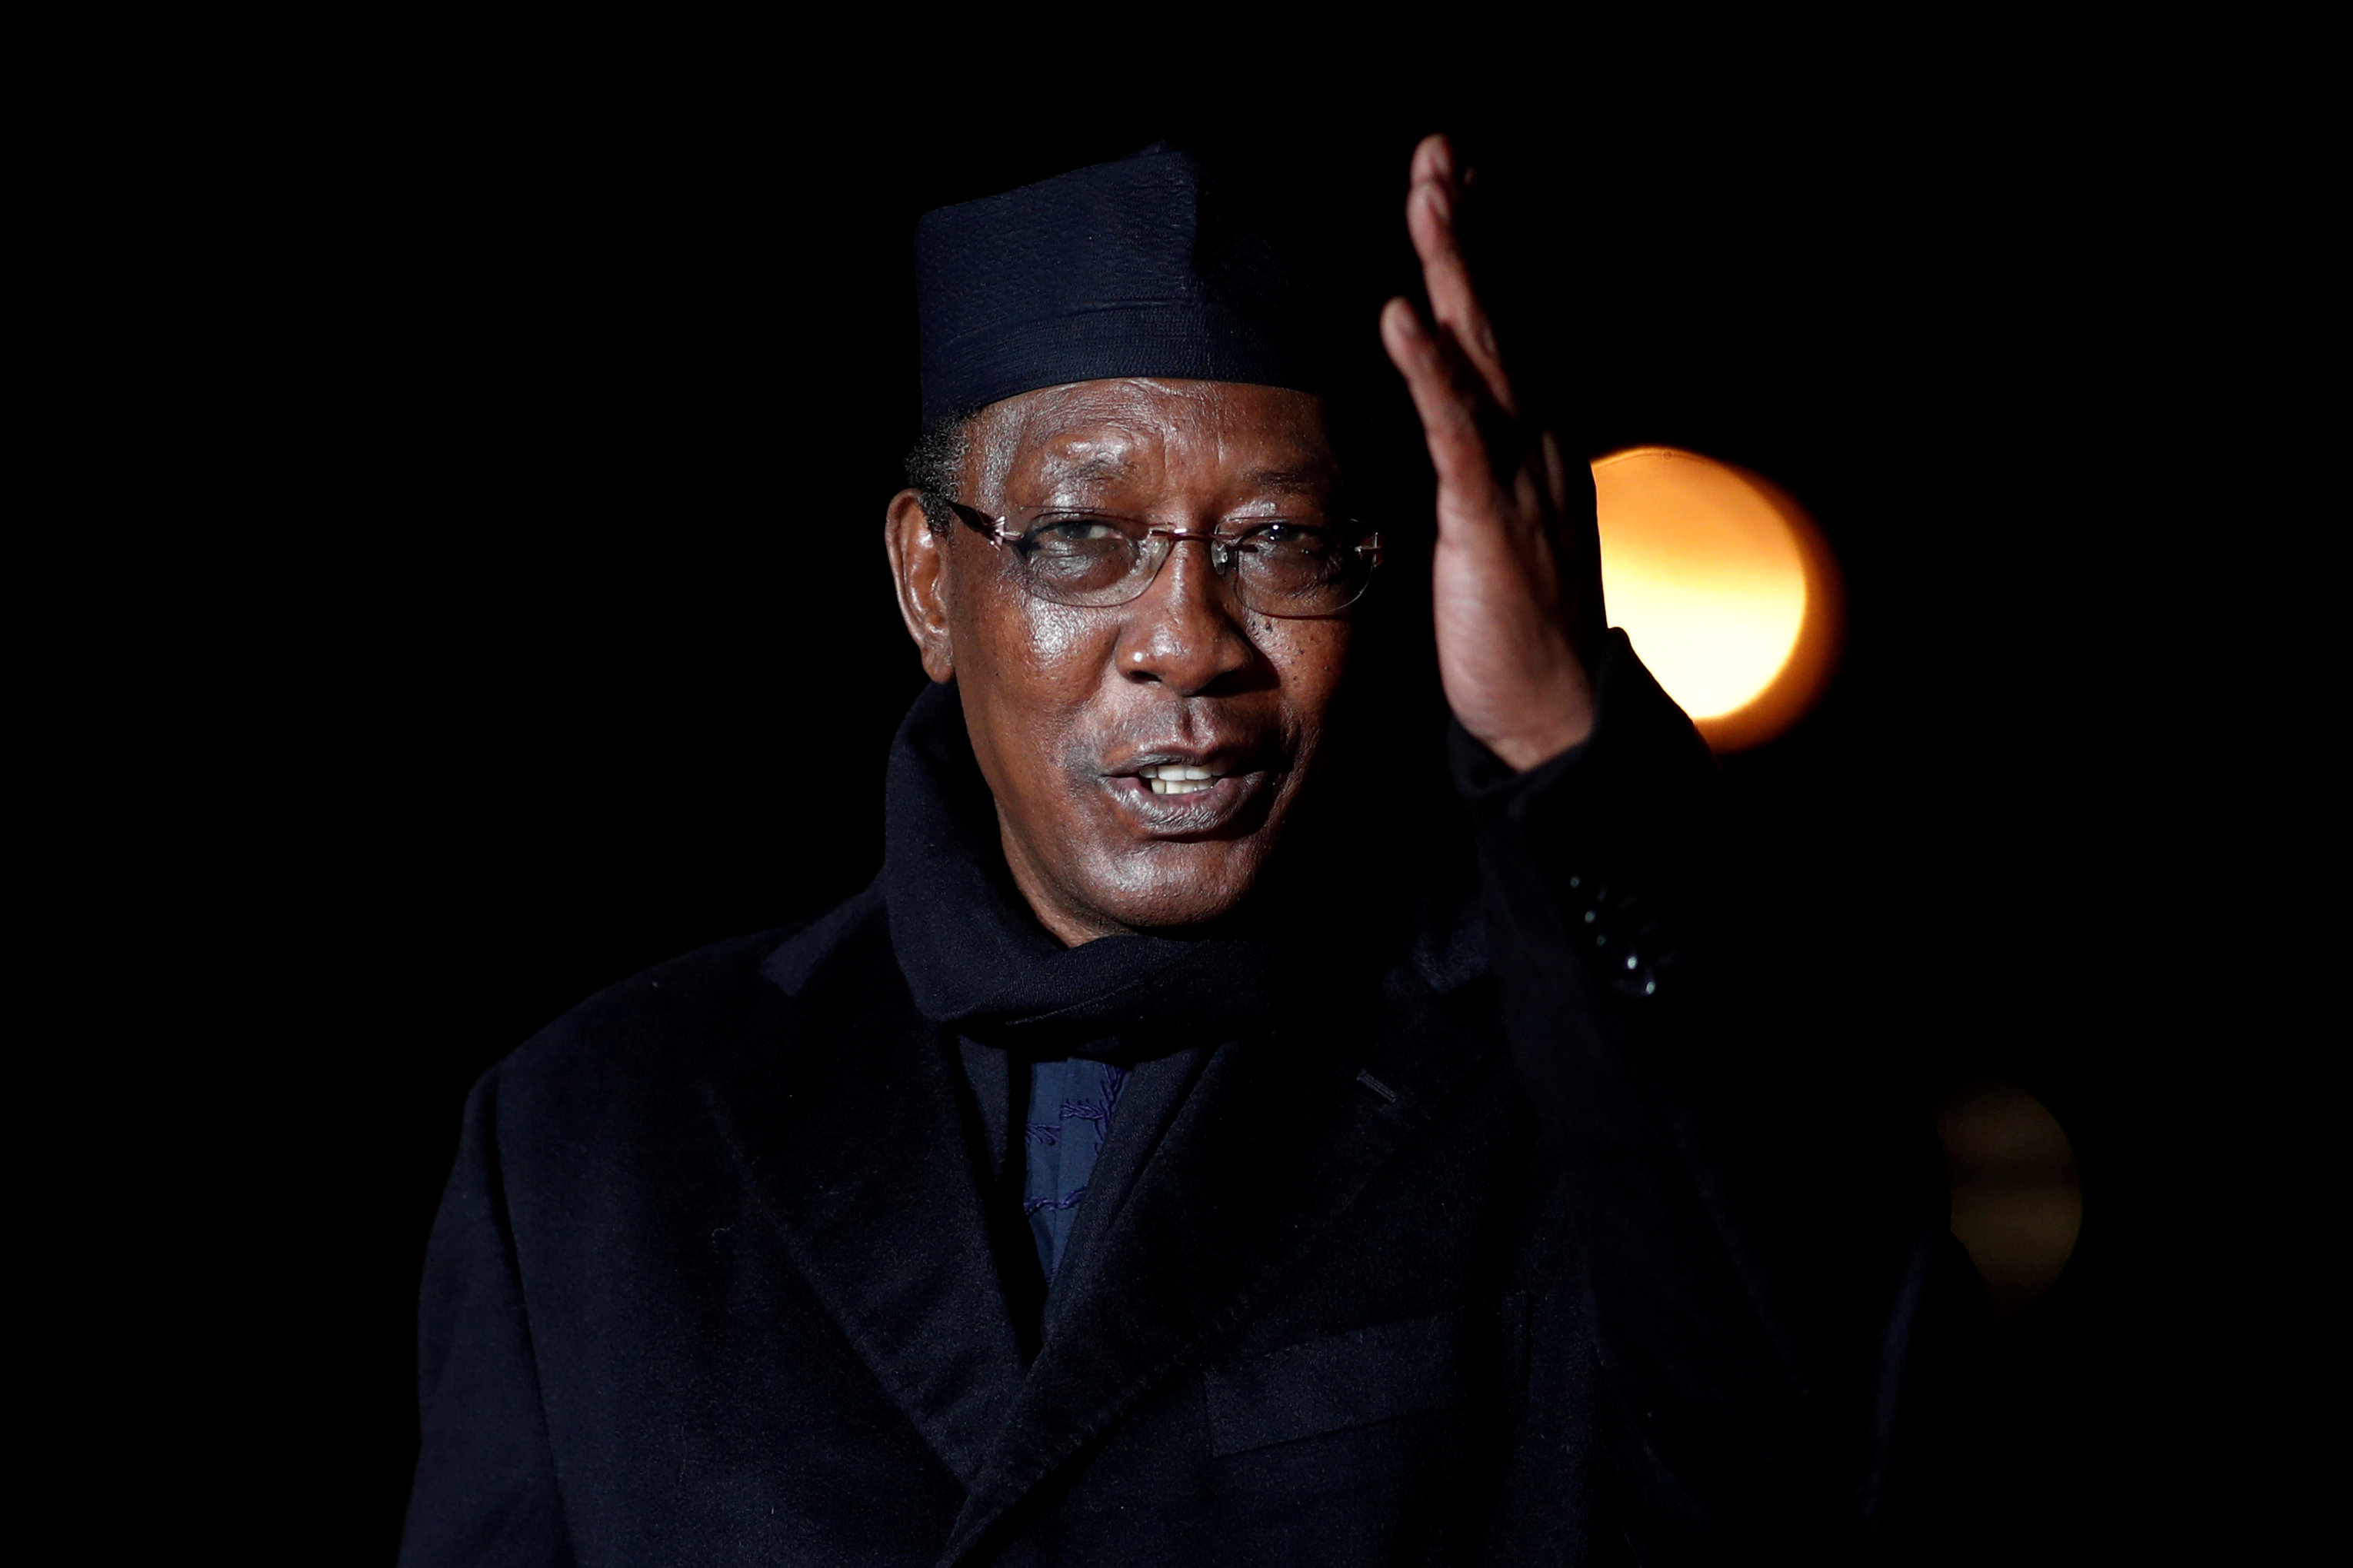 Le Secrétaire Général Présente ses Condoléances au Peuple Tchadien